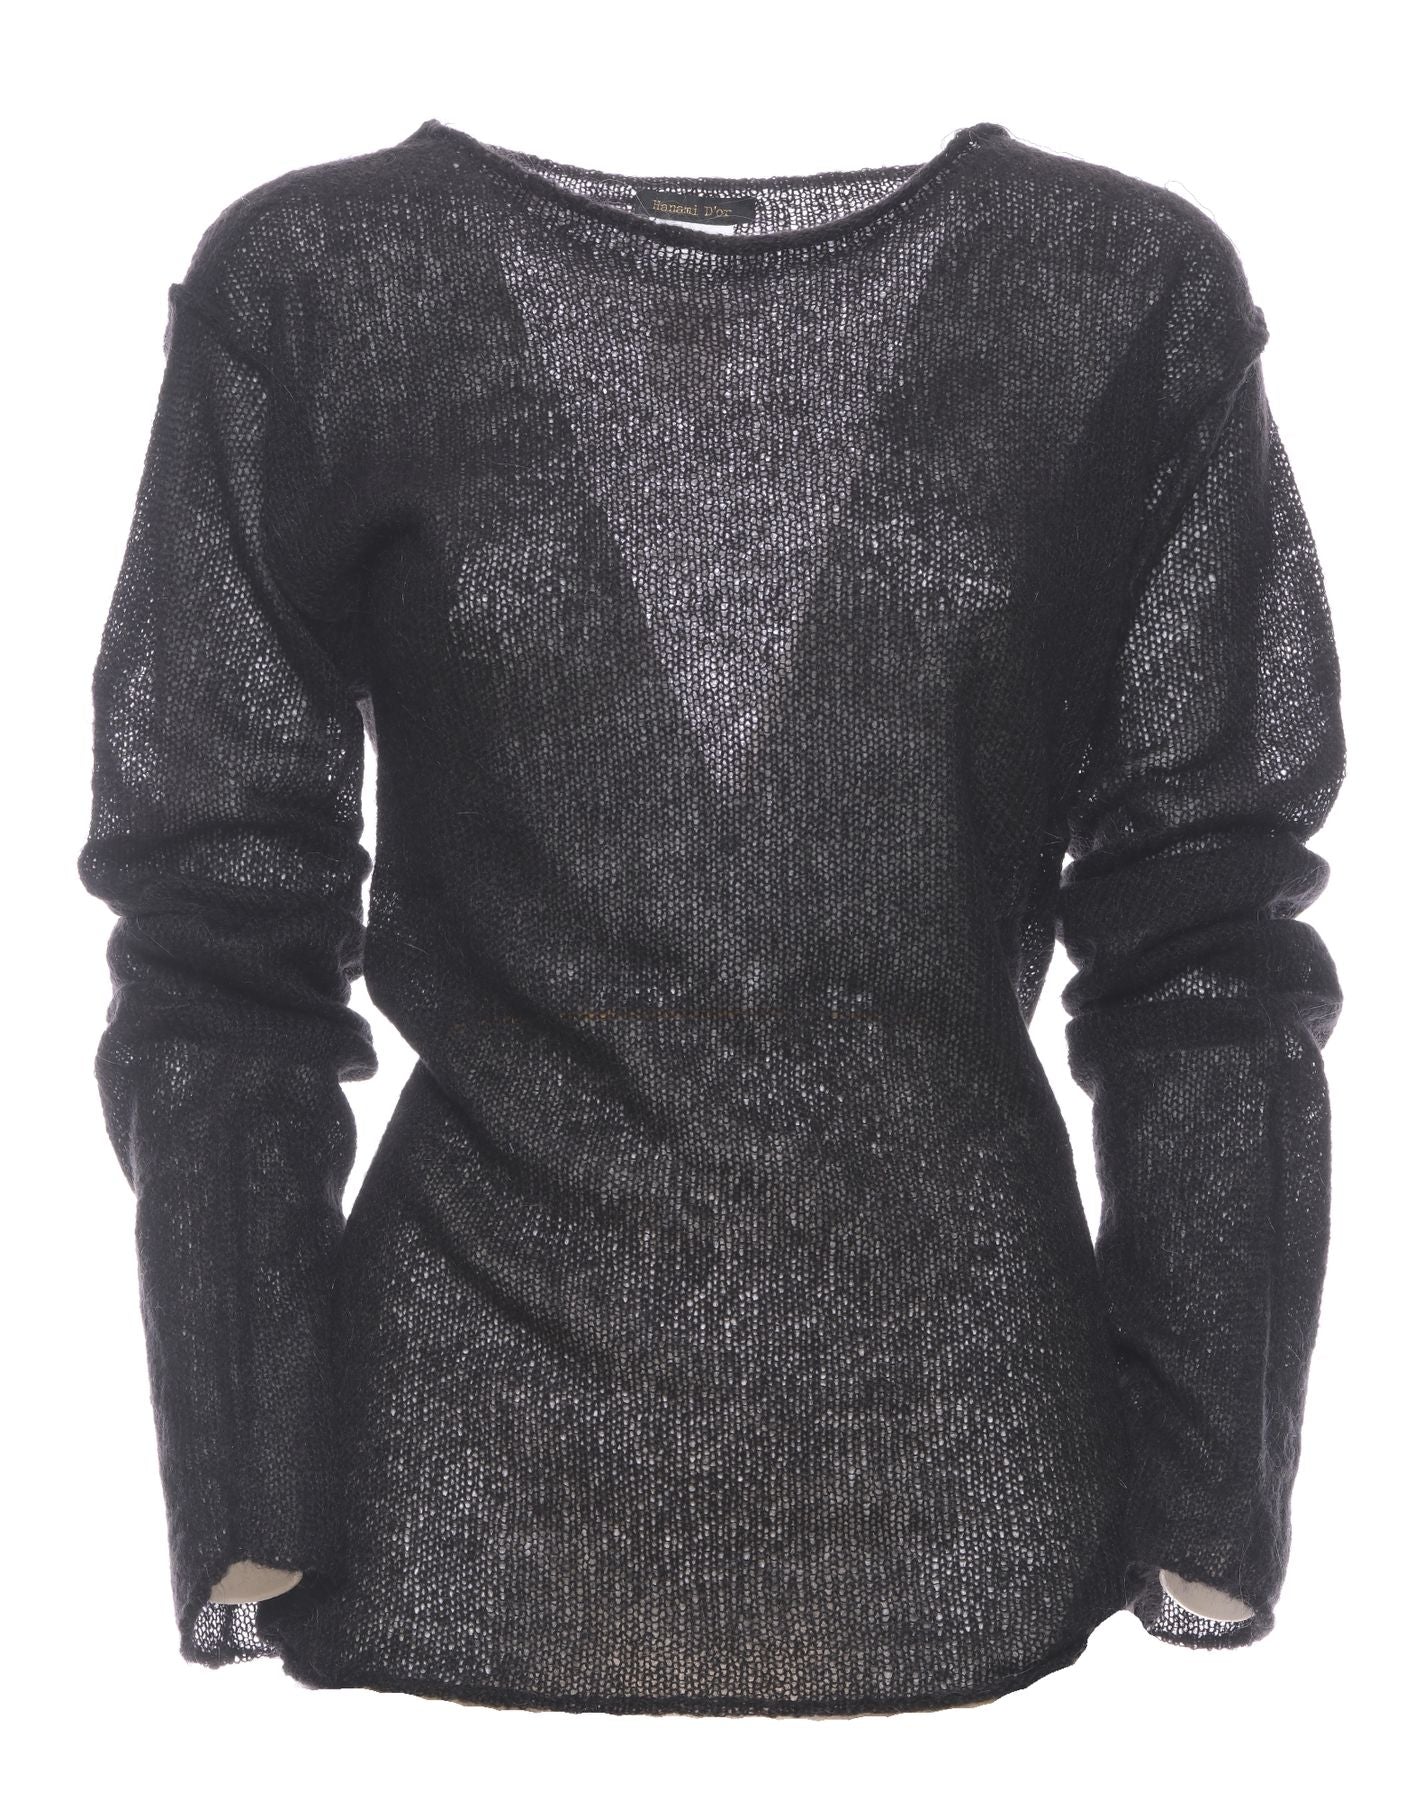 Sweatshirt pour femme OASI 288 22 BLACK Hanami D'or